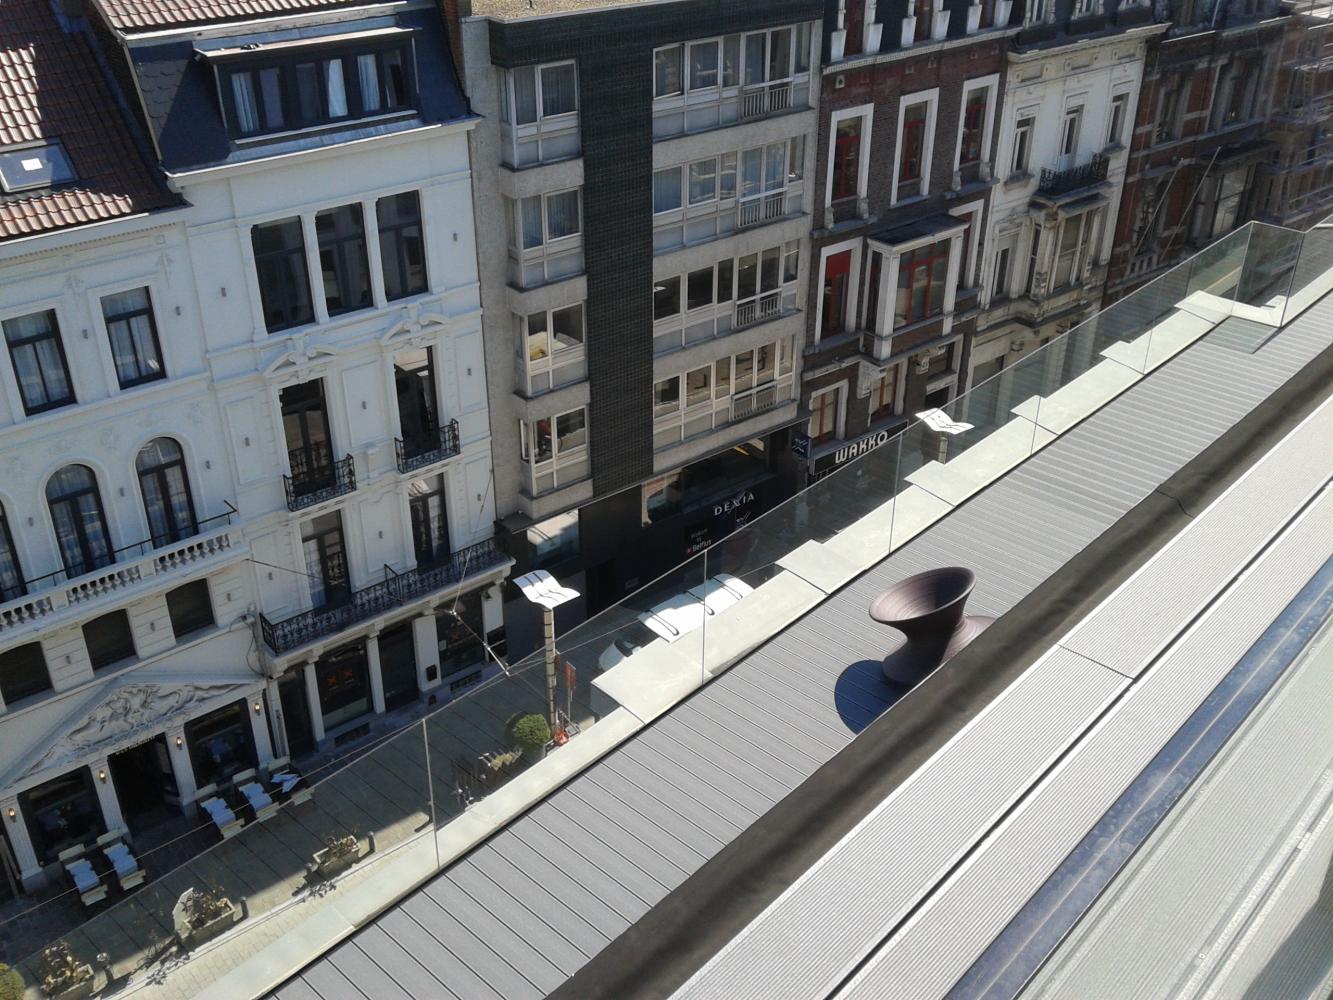 Realisatie in glaswerk: verbouwing van kantoren en lofts in centrum Gent – glazen borstwering rond dakterras met puttinggreen.